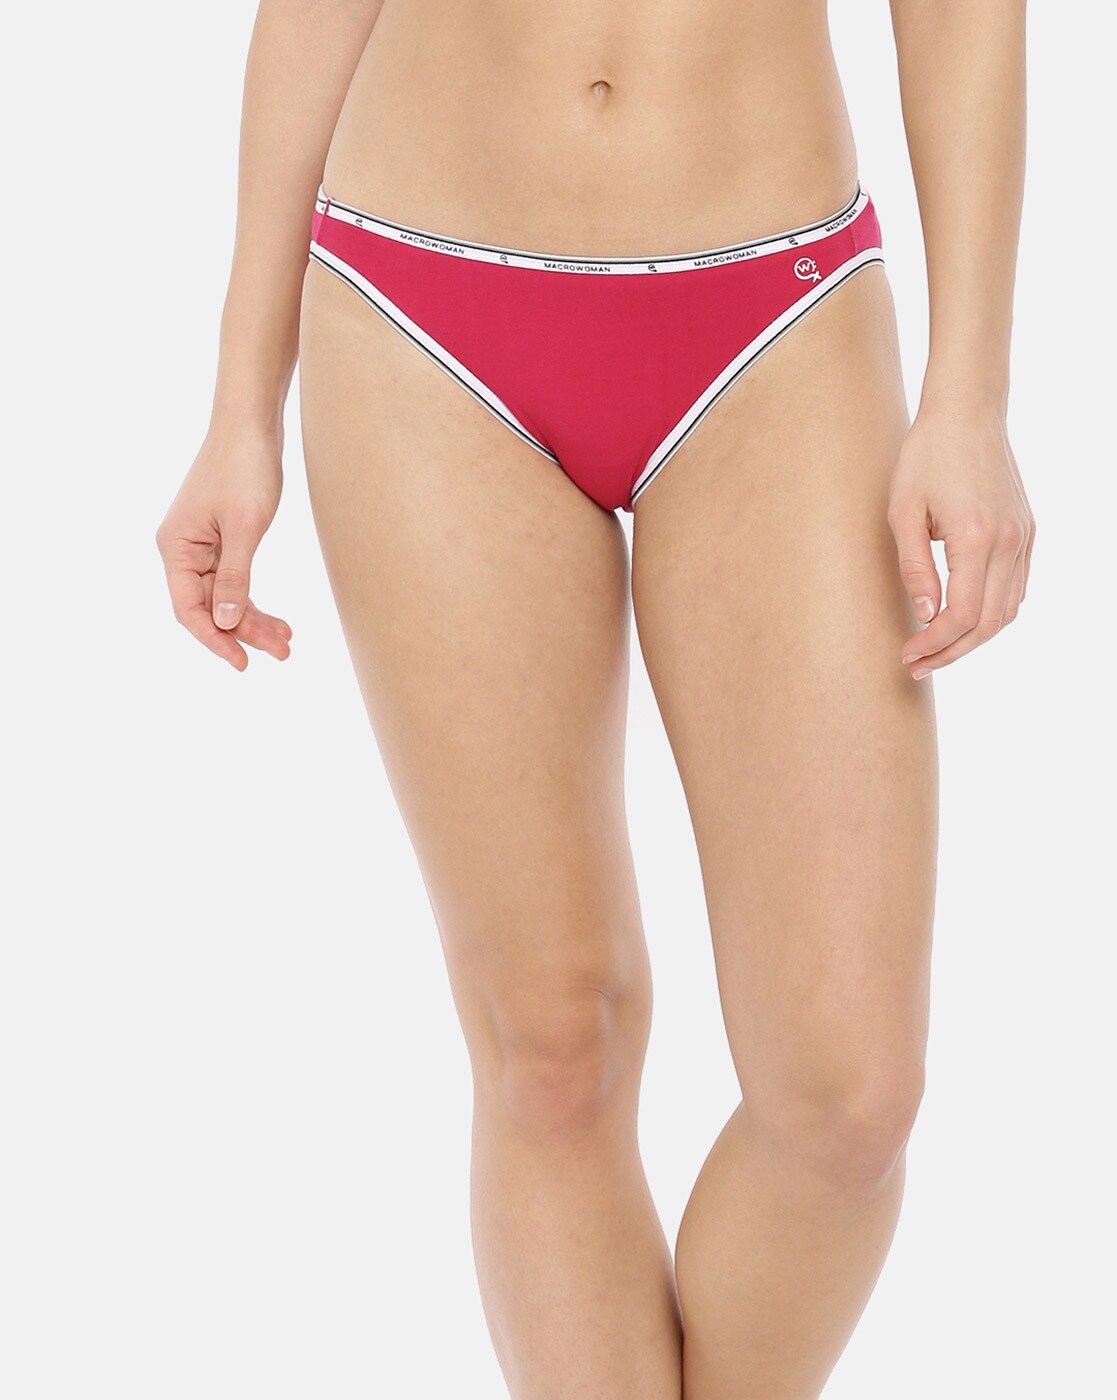 poloman Women Bikini Red, Pink Panty - Buy poloman Women Bikini Red, Pink  Panty Online at Best Prices in India